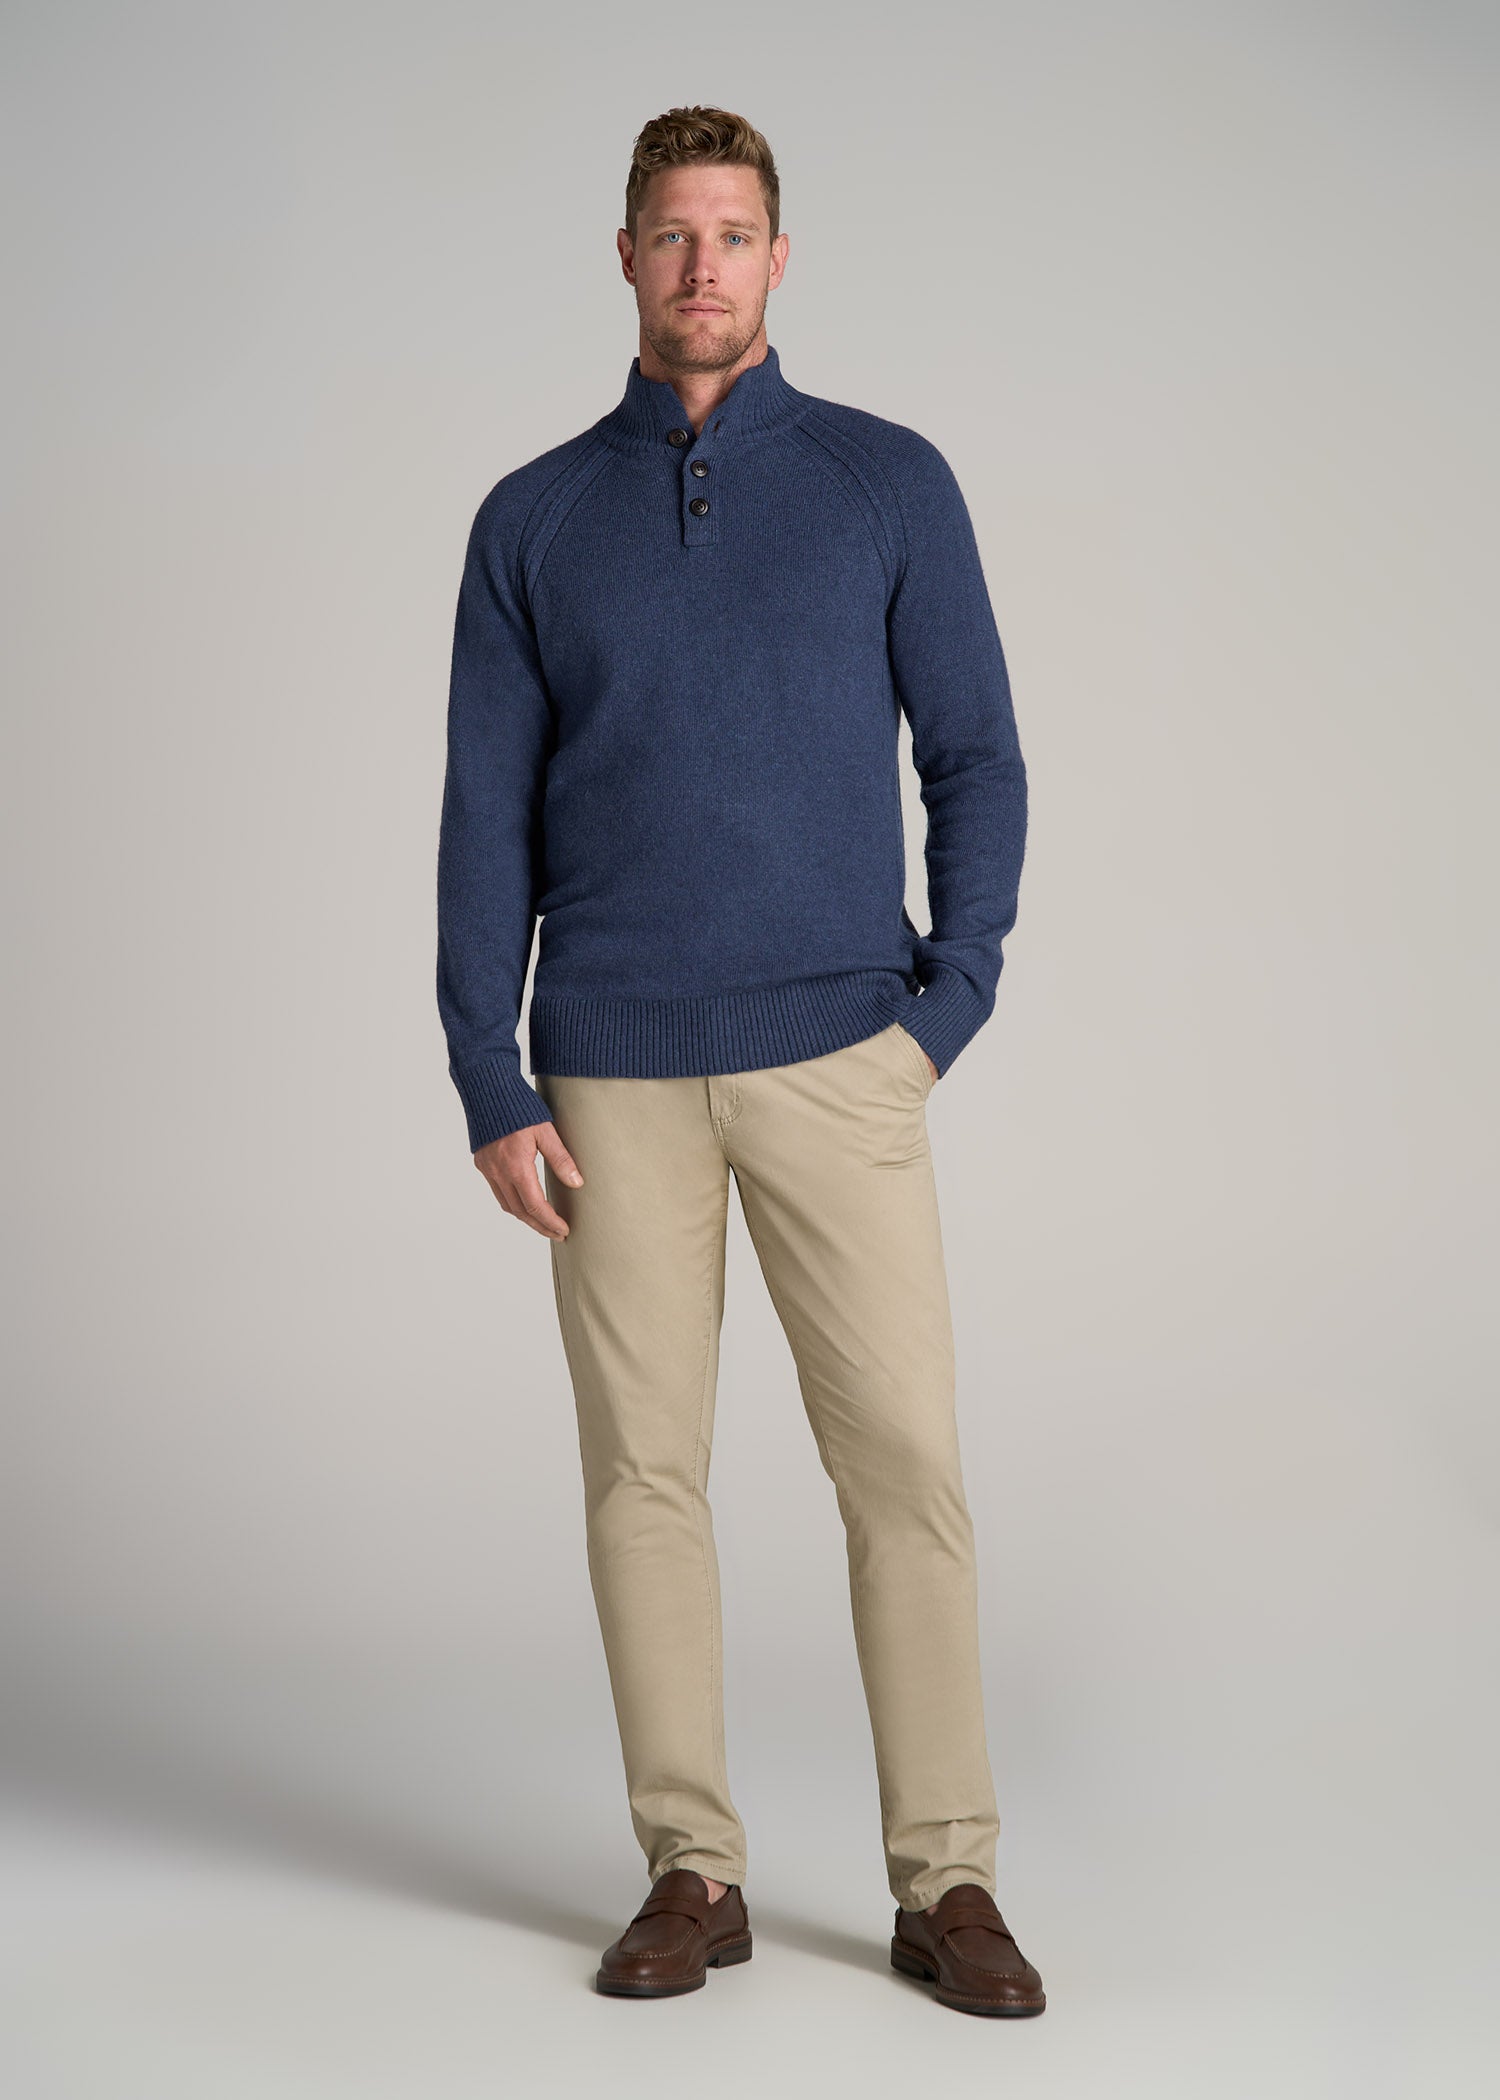 Three Button Mock Neck Tall Men's Sweater in Deep Cobalt Mix